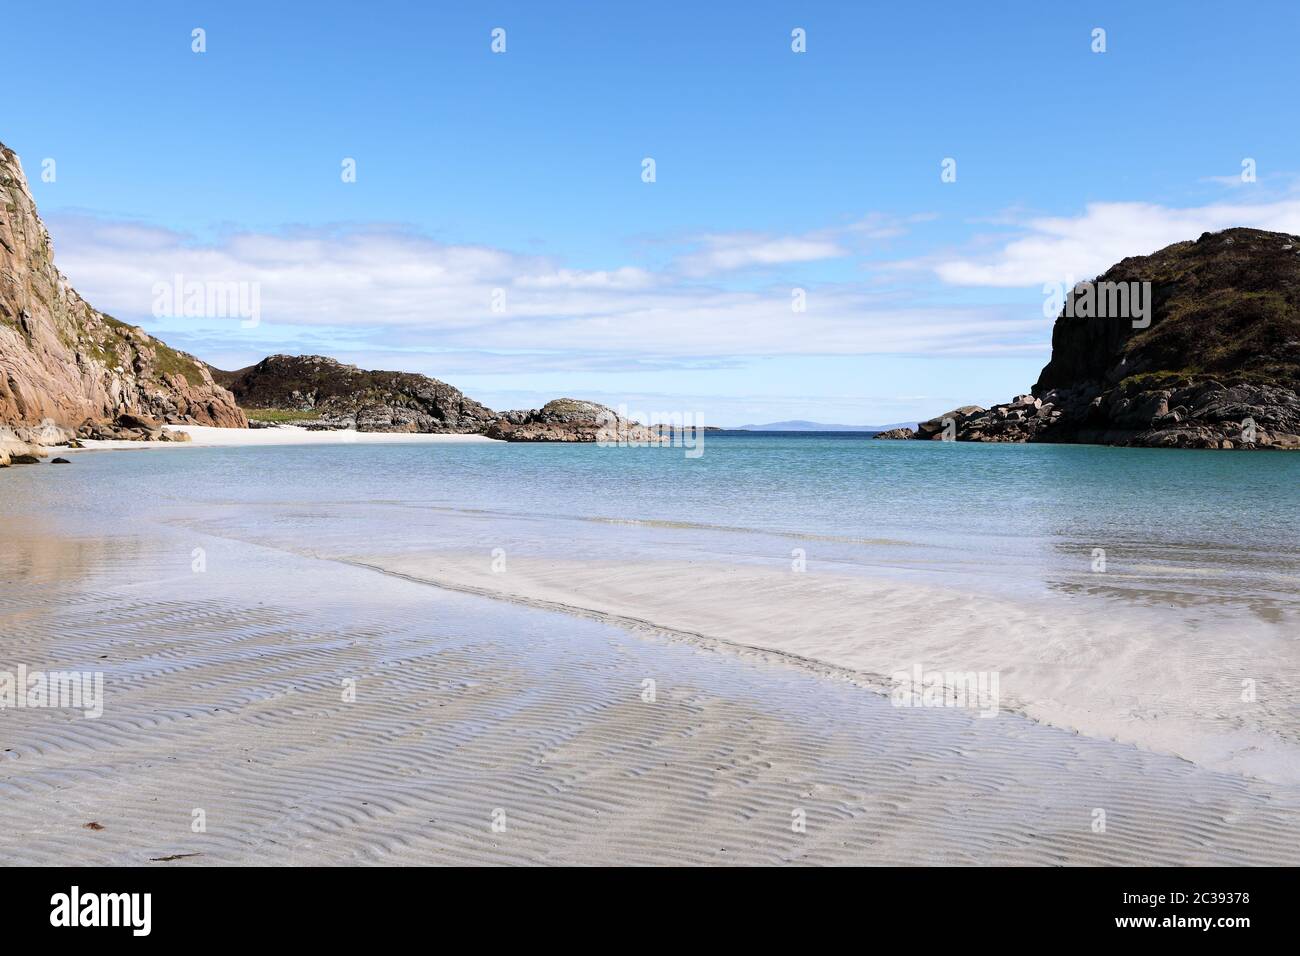 Traigh Gheal, une fabuleuse plage de sable blanc sur l'île de Mull, Hébrides intérieures d'Écosse Banque D'Images